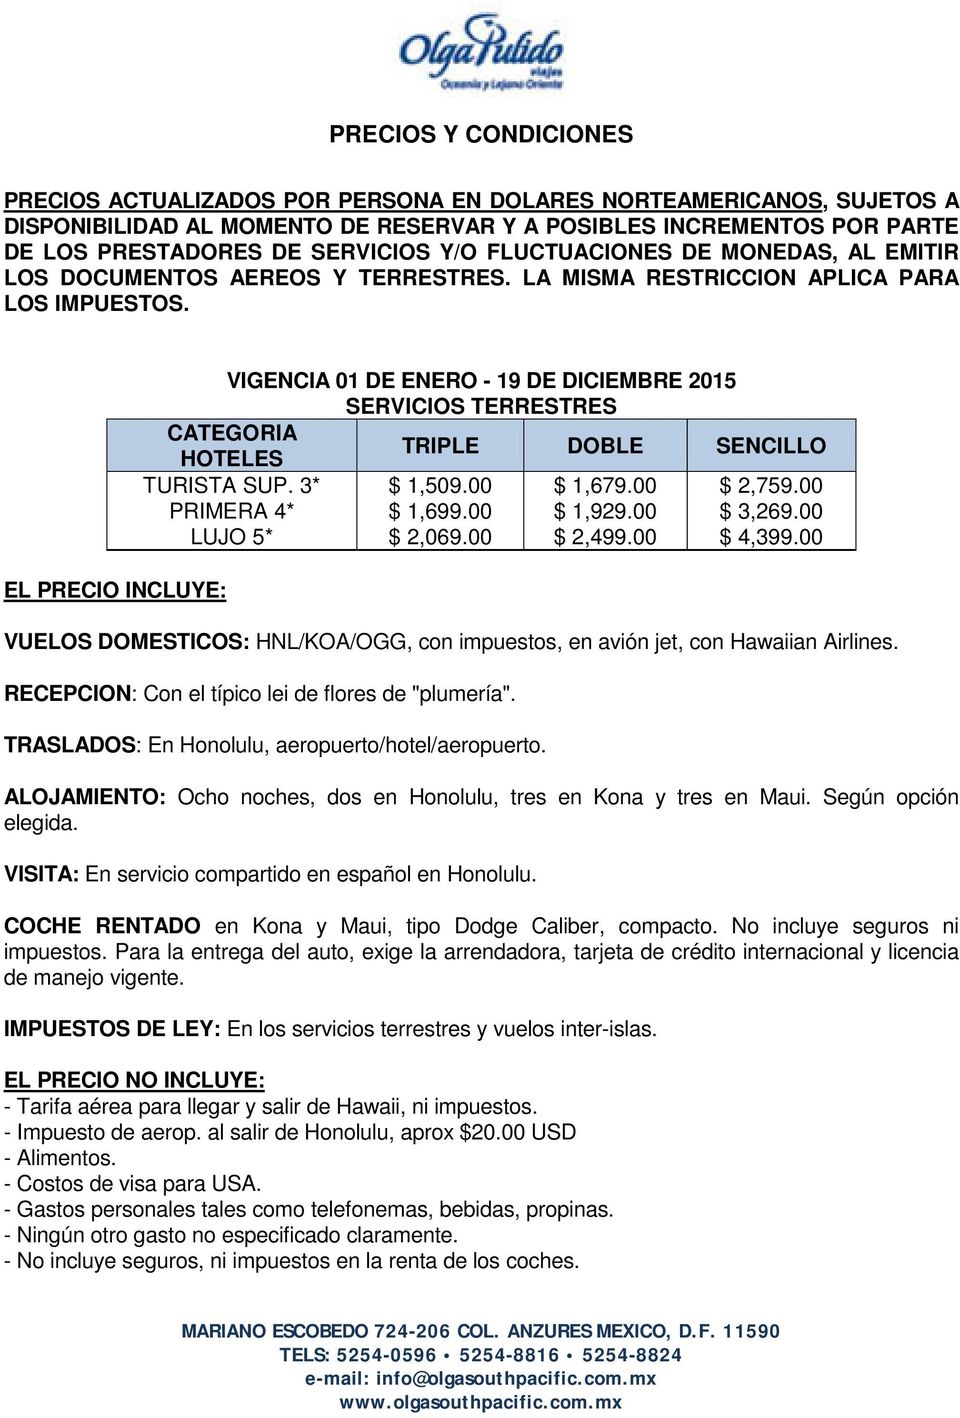 EL PRECIO INCLUYE: VIGENCIA 01 DE ENERO - 19 DE DICIEMBRE 2015 SERVICIOS TERRESTRES CATEGORIA HOTELES TRIPLE DOBLE SENCILLO TURISTA SUP. 3* $ 1,509.00 $ 1,679.00 $ 2,759.00 PRIMERA 4* $ 1,699.